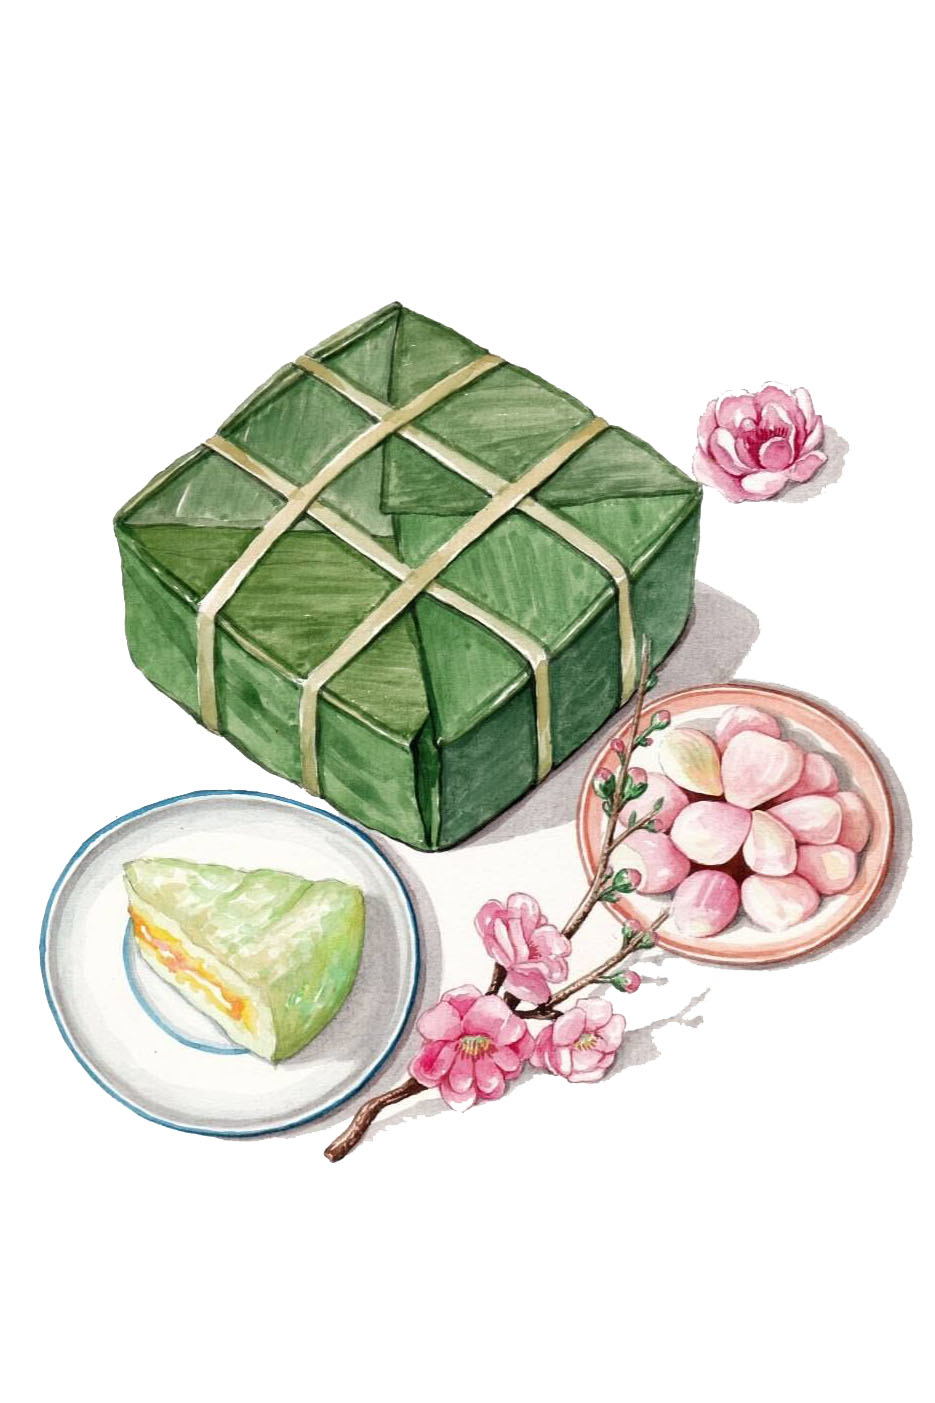 Tranh vẽ bánh chưng mang đầy ý nghĩa tâm linh và văn hóa dân tộc Việt Nam. Bạn muốn khám phá những bức tranh về bánh chưng cực kì đặc sắc và độc đáo? Hãy xem ngay hình ảnh này để có những trải nghiệm tuyệt vời!